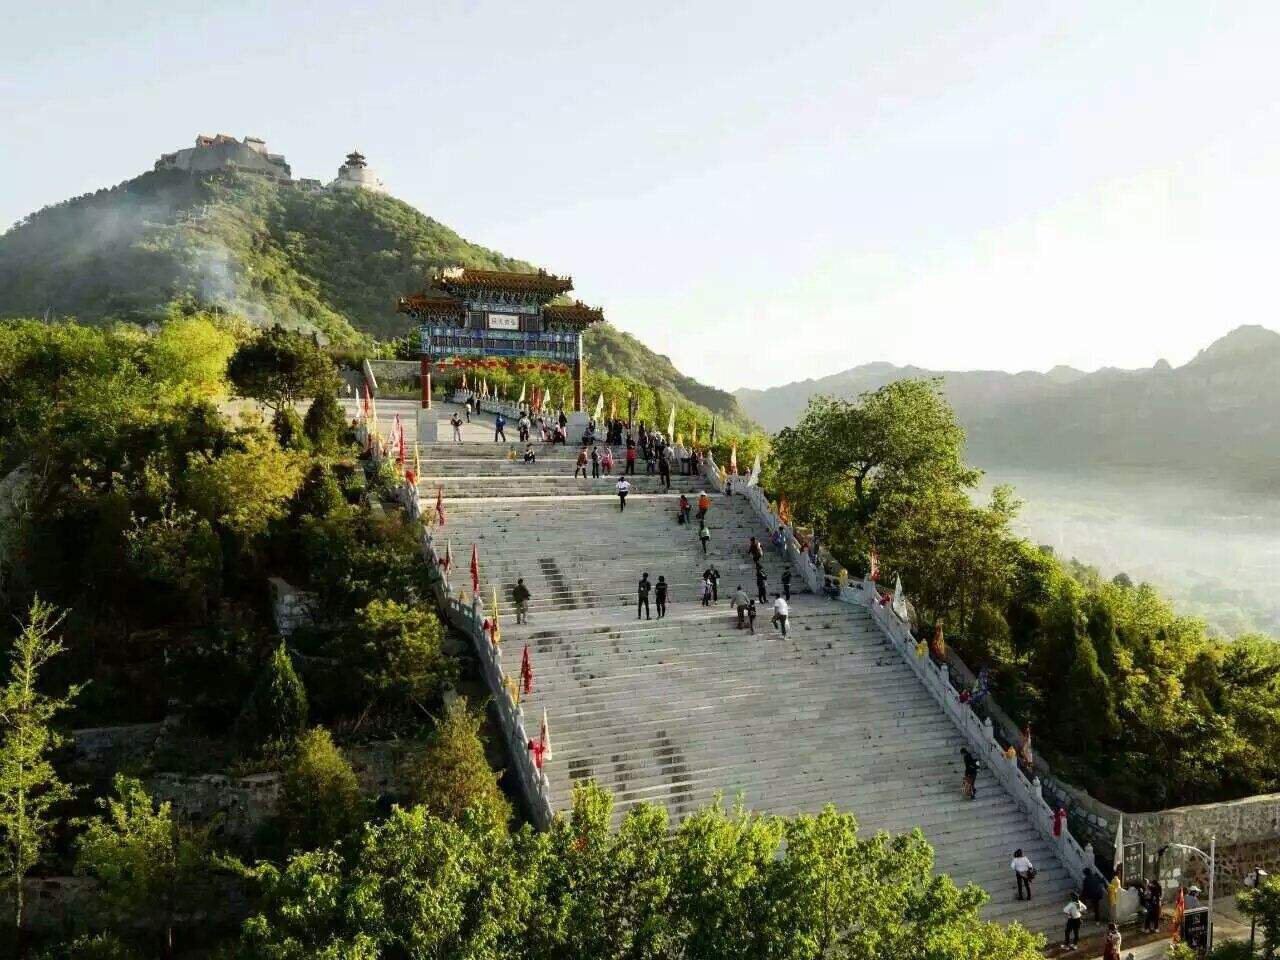 北京平谷旅游区,金海湖上戏水,石林峡内寻"三绝"